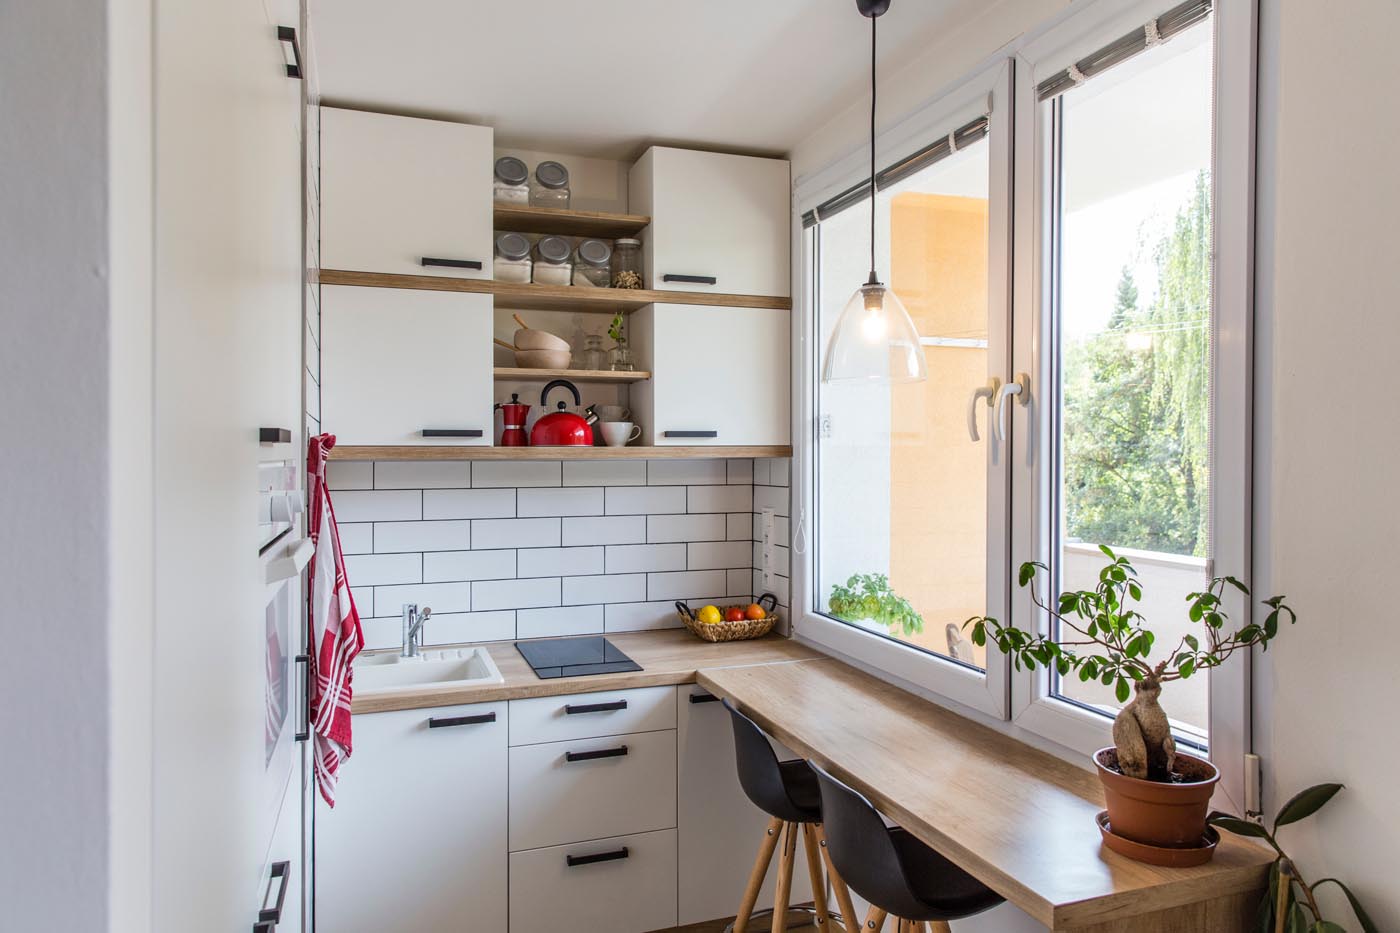 Lưu ý lựa chọn nội thất khi thiết kế tủ bếp cho căn hộ chung cư